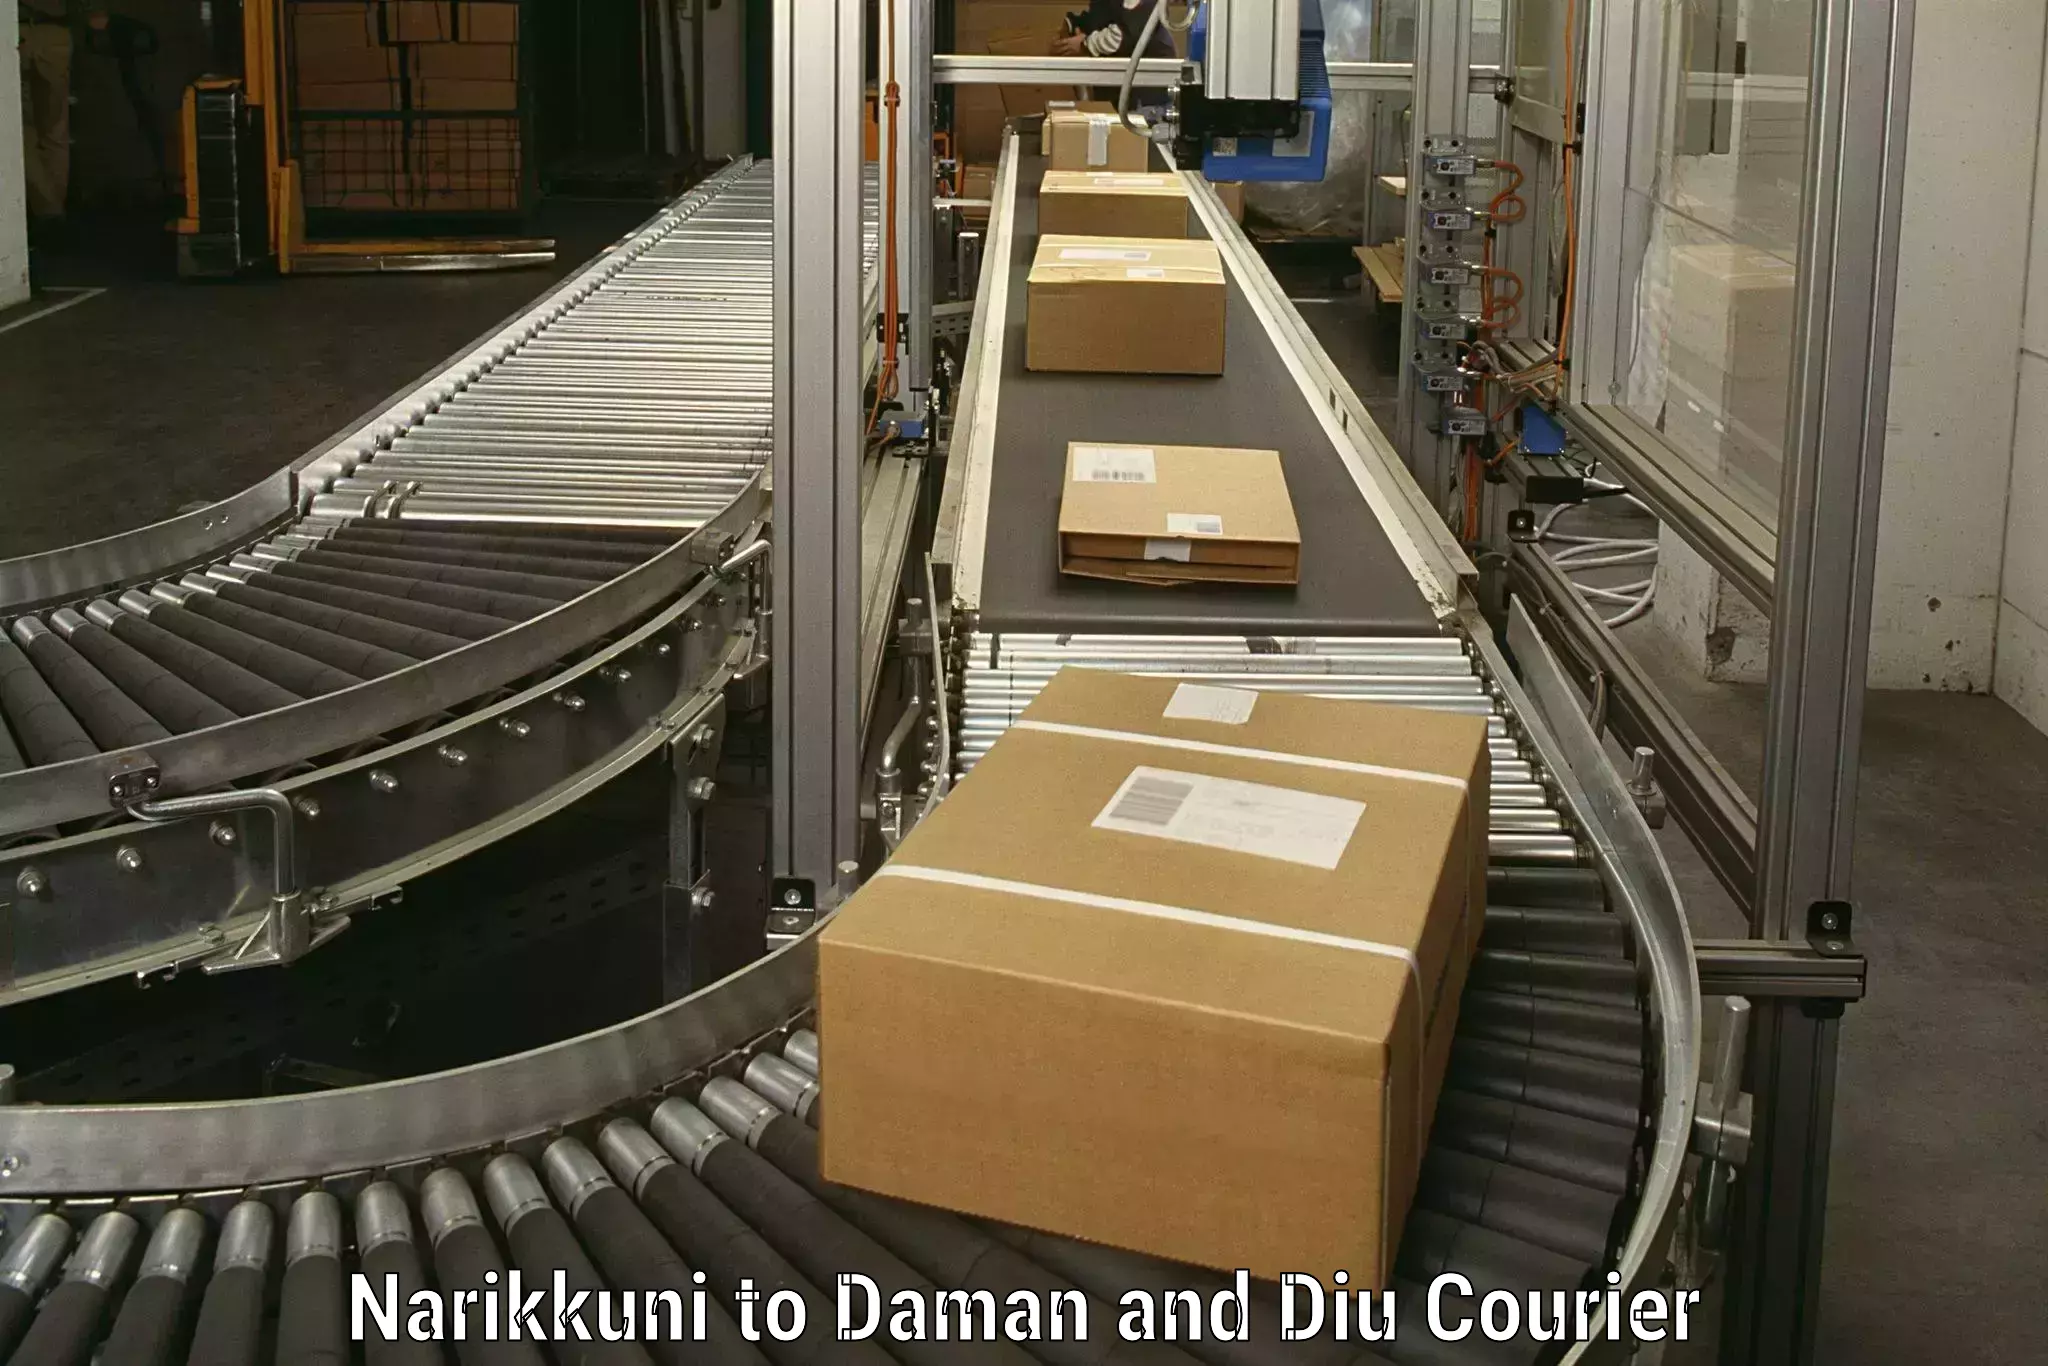 Specialized moving company Narikkuni to Diu